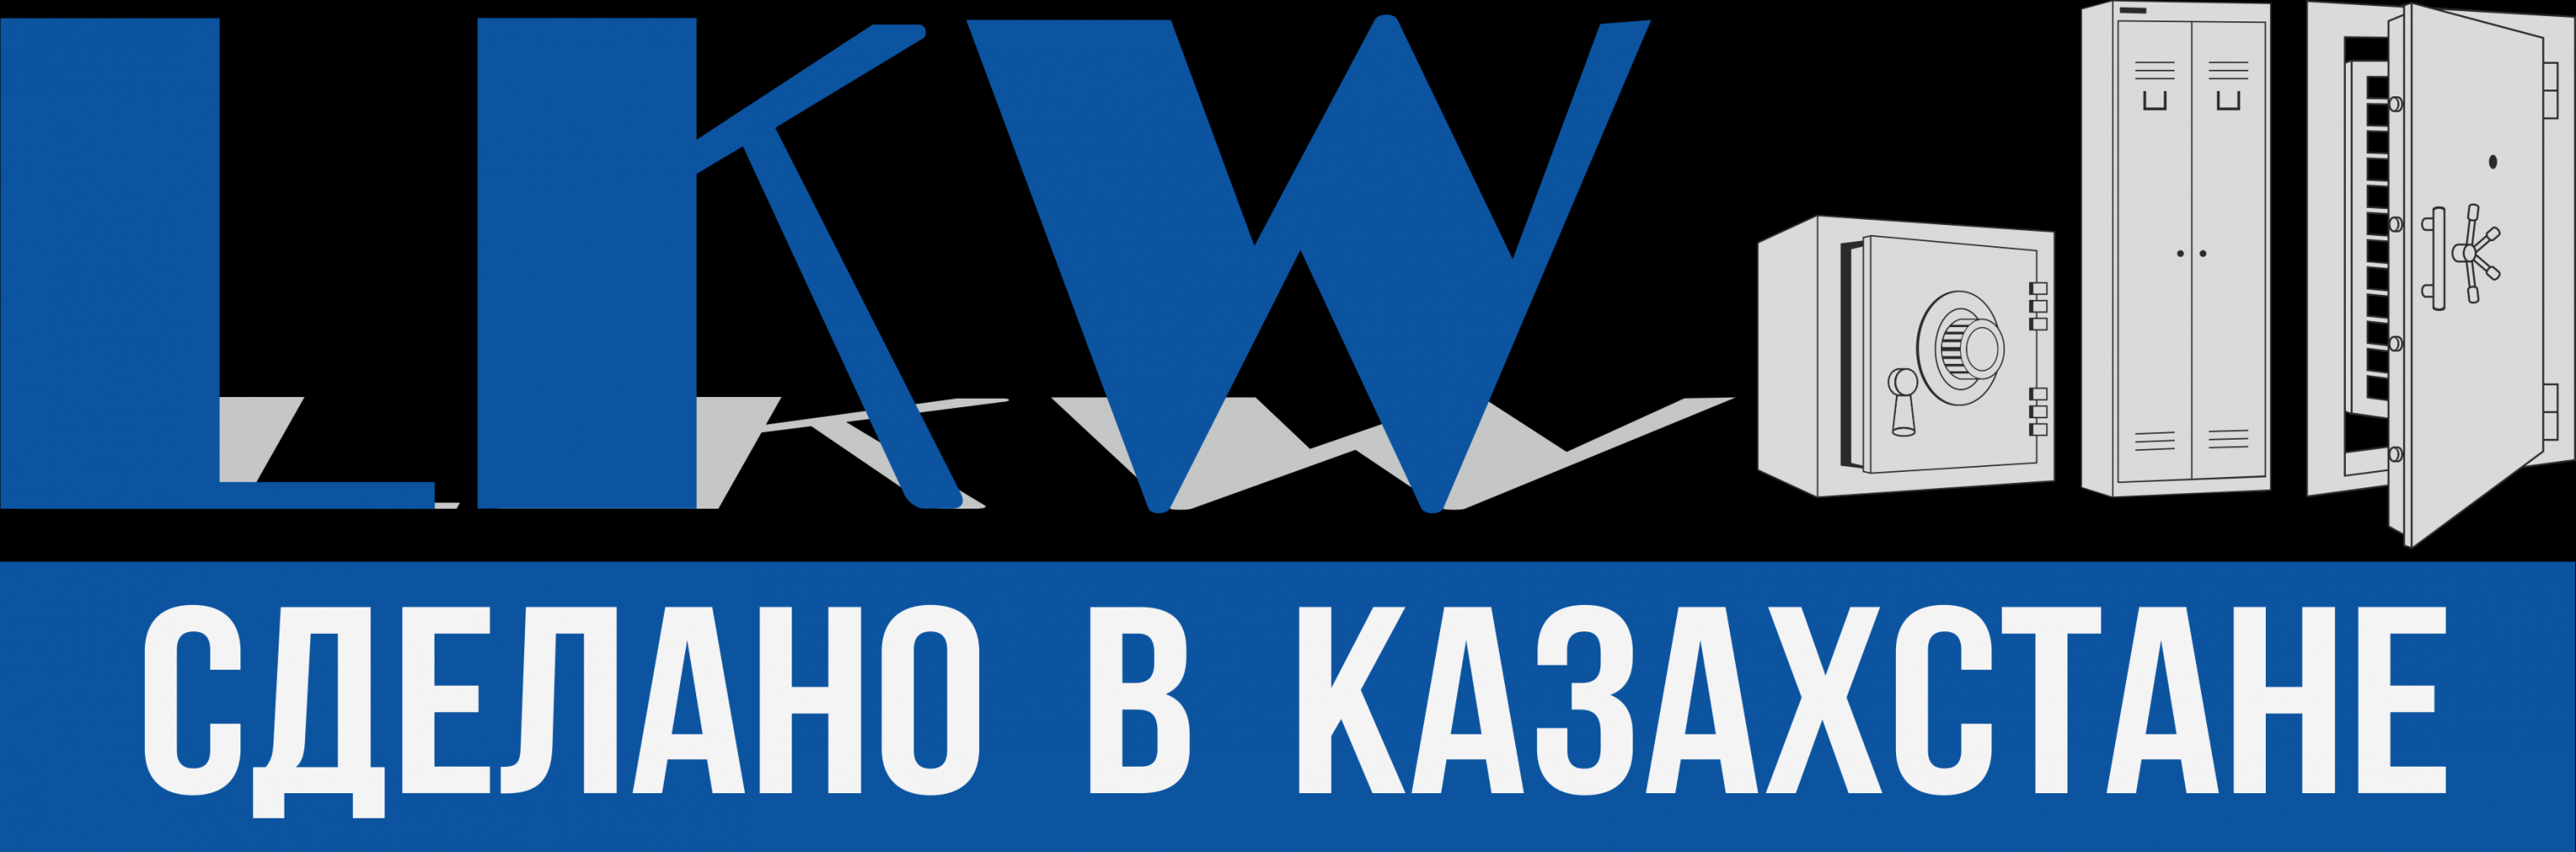 Фото Производственная компания LKW - Алматы. Сейфы, стеллажи и бронированные двери в Алматы